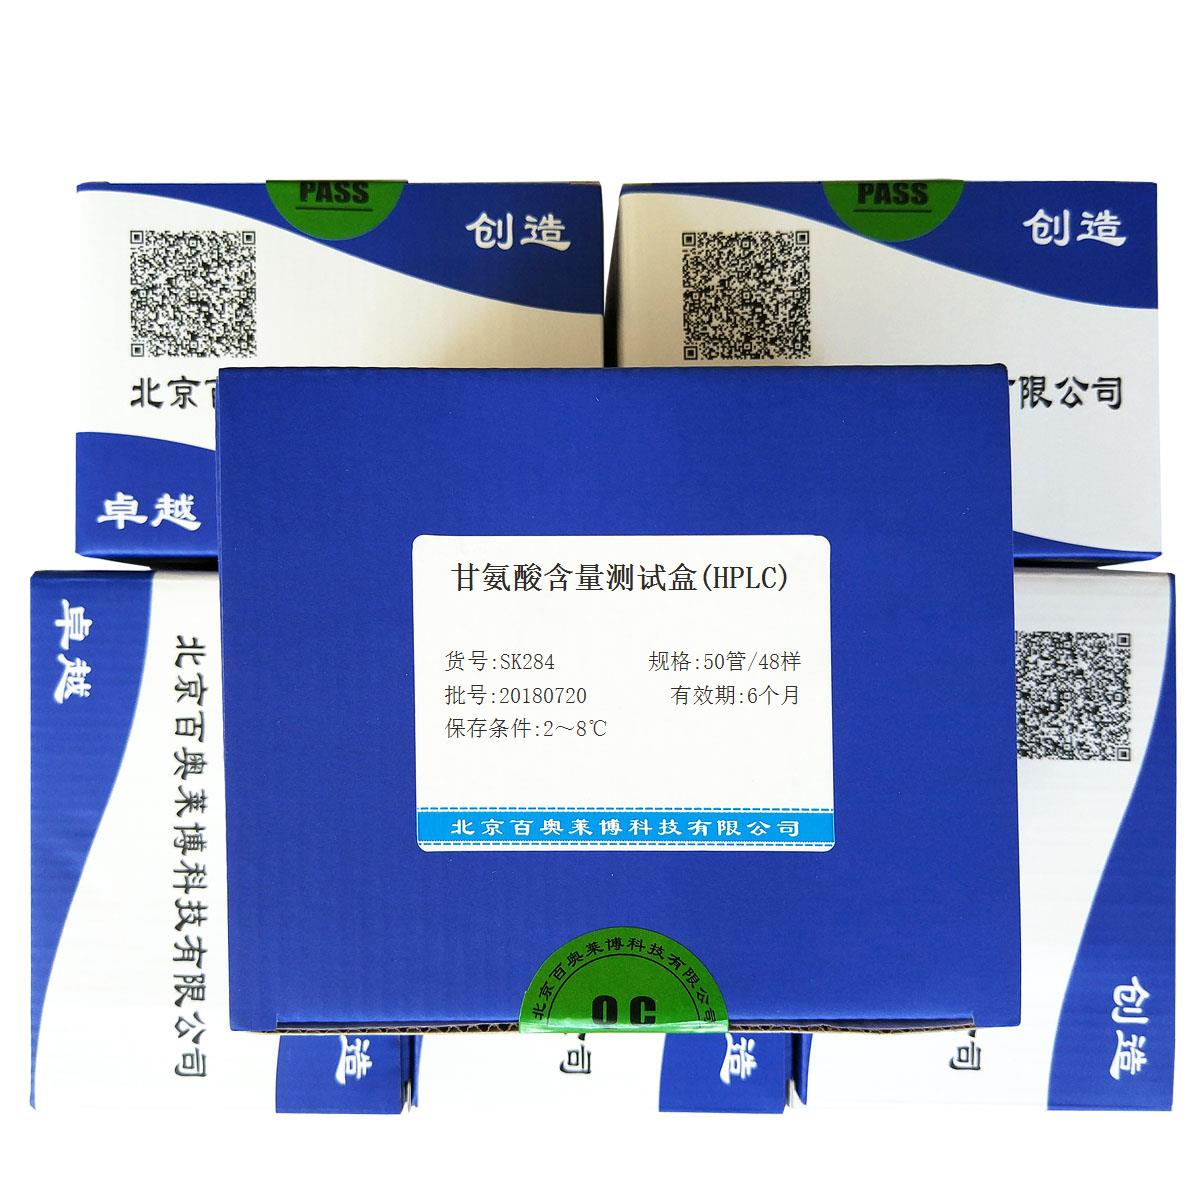 甘氨酸含量测试盒(HPLC)